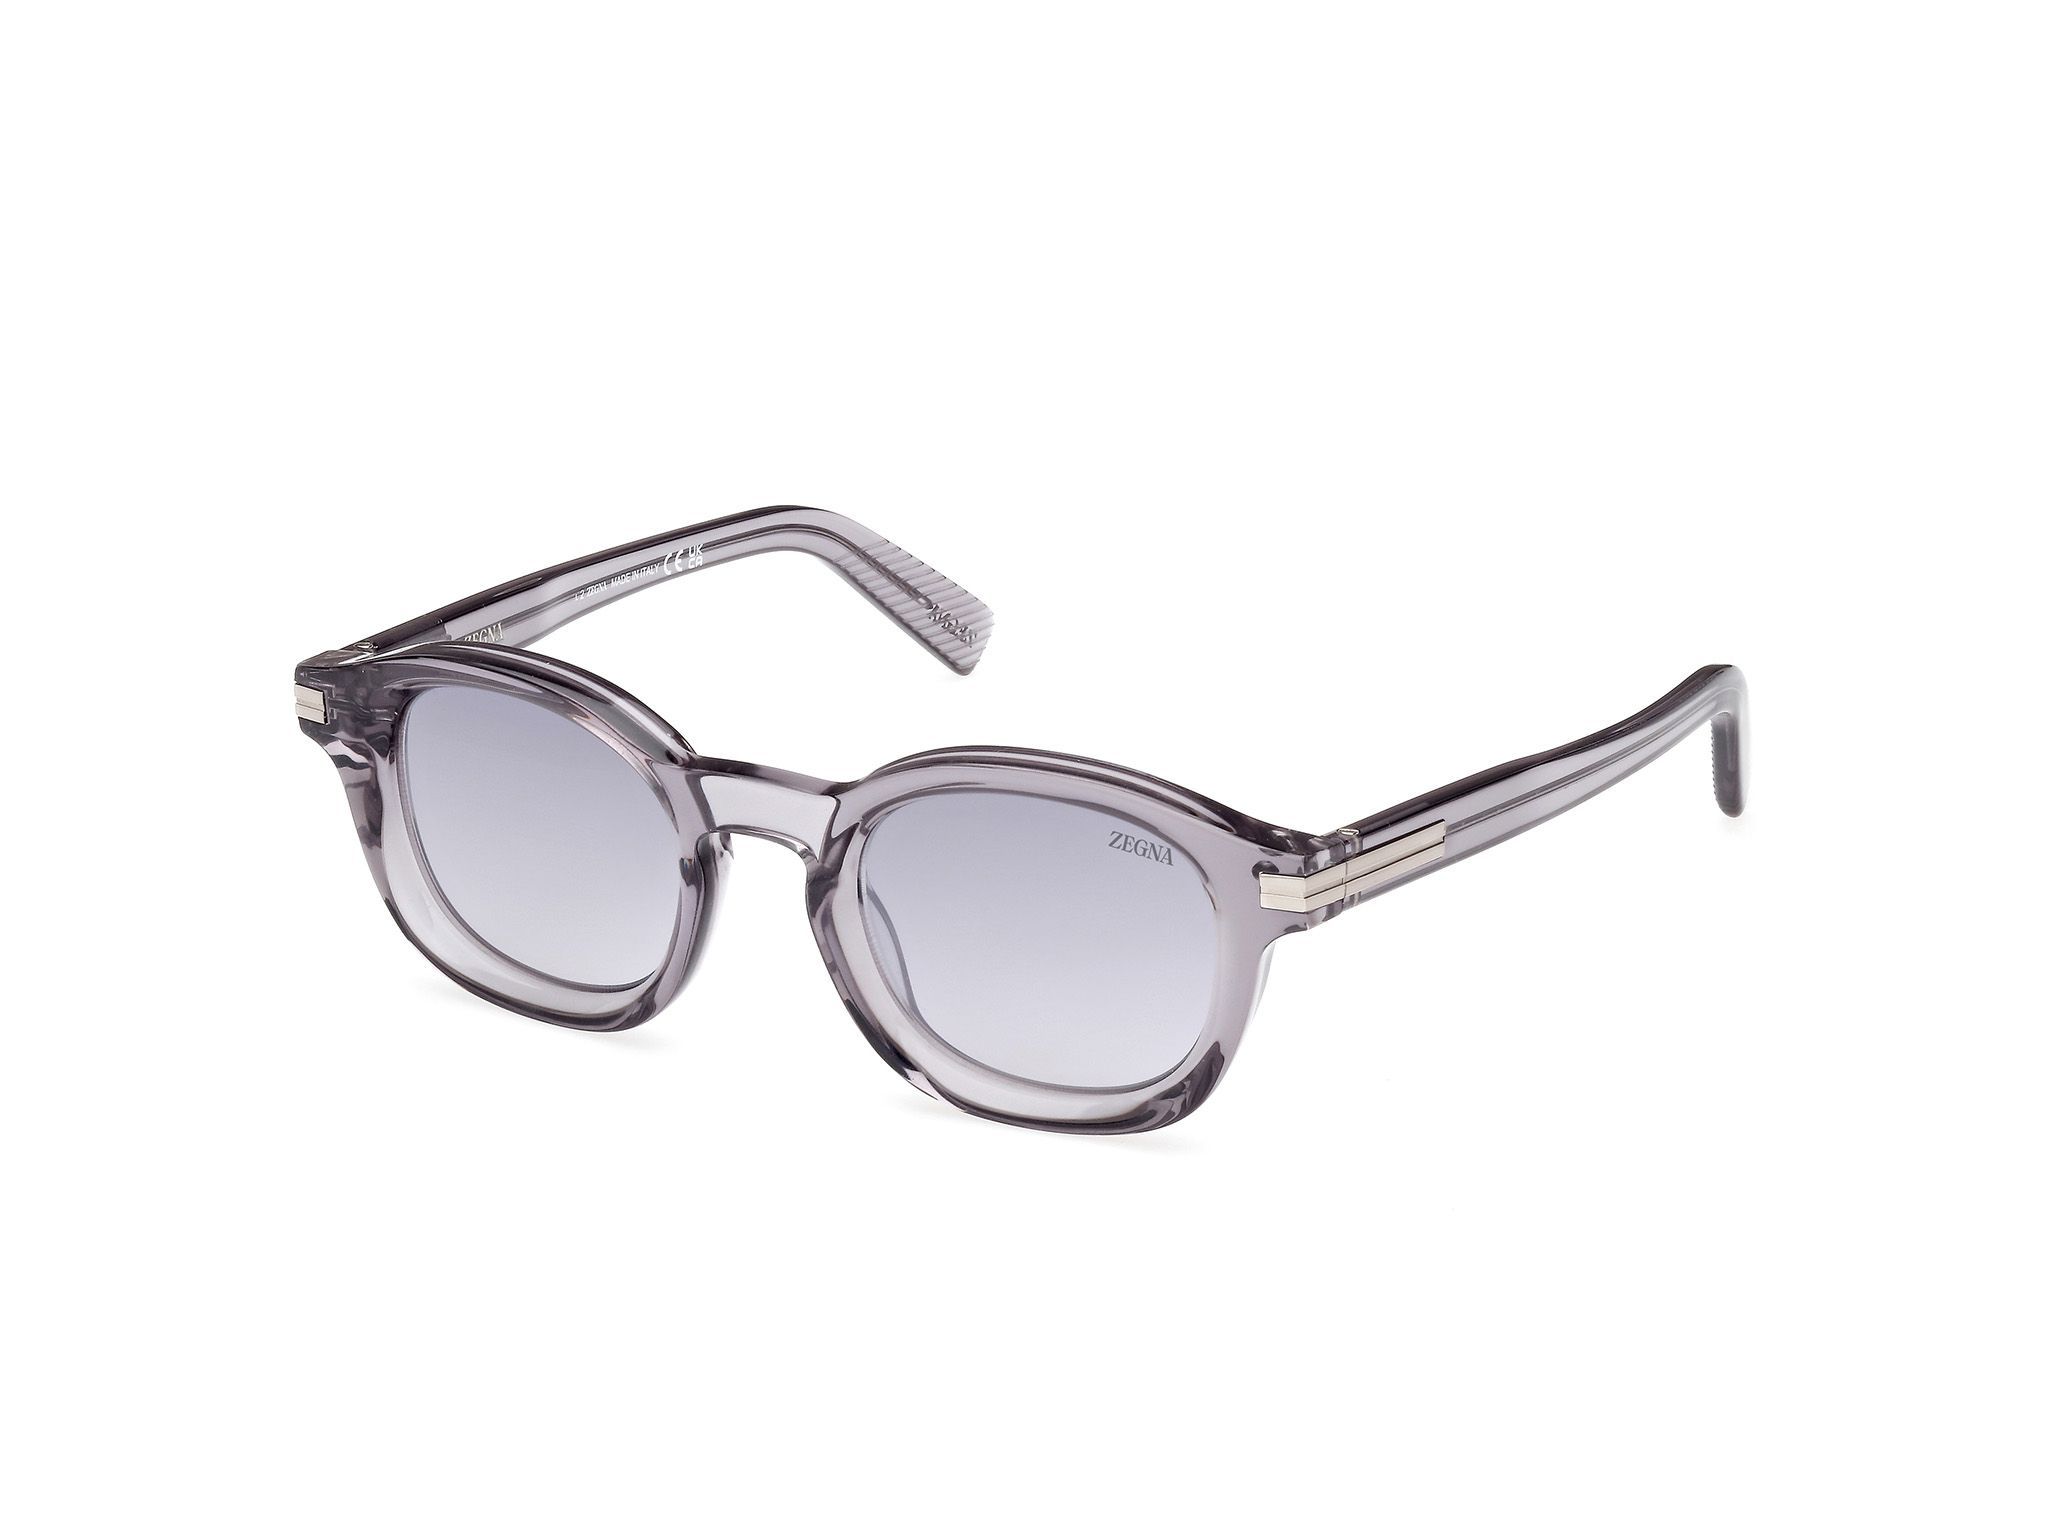 EZ0229 Round Sunglasses 20C - size 47